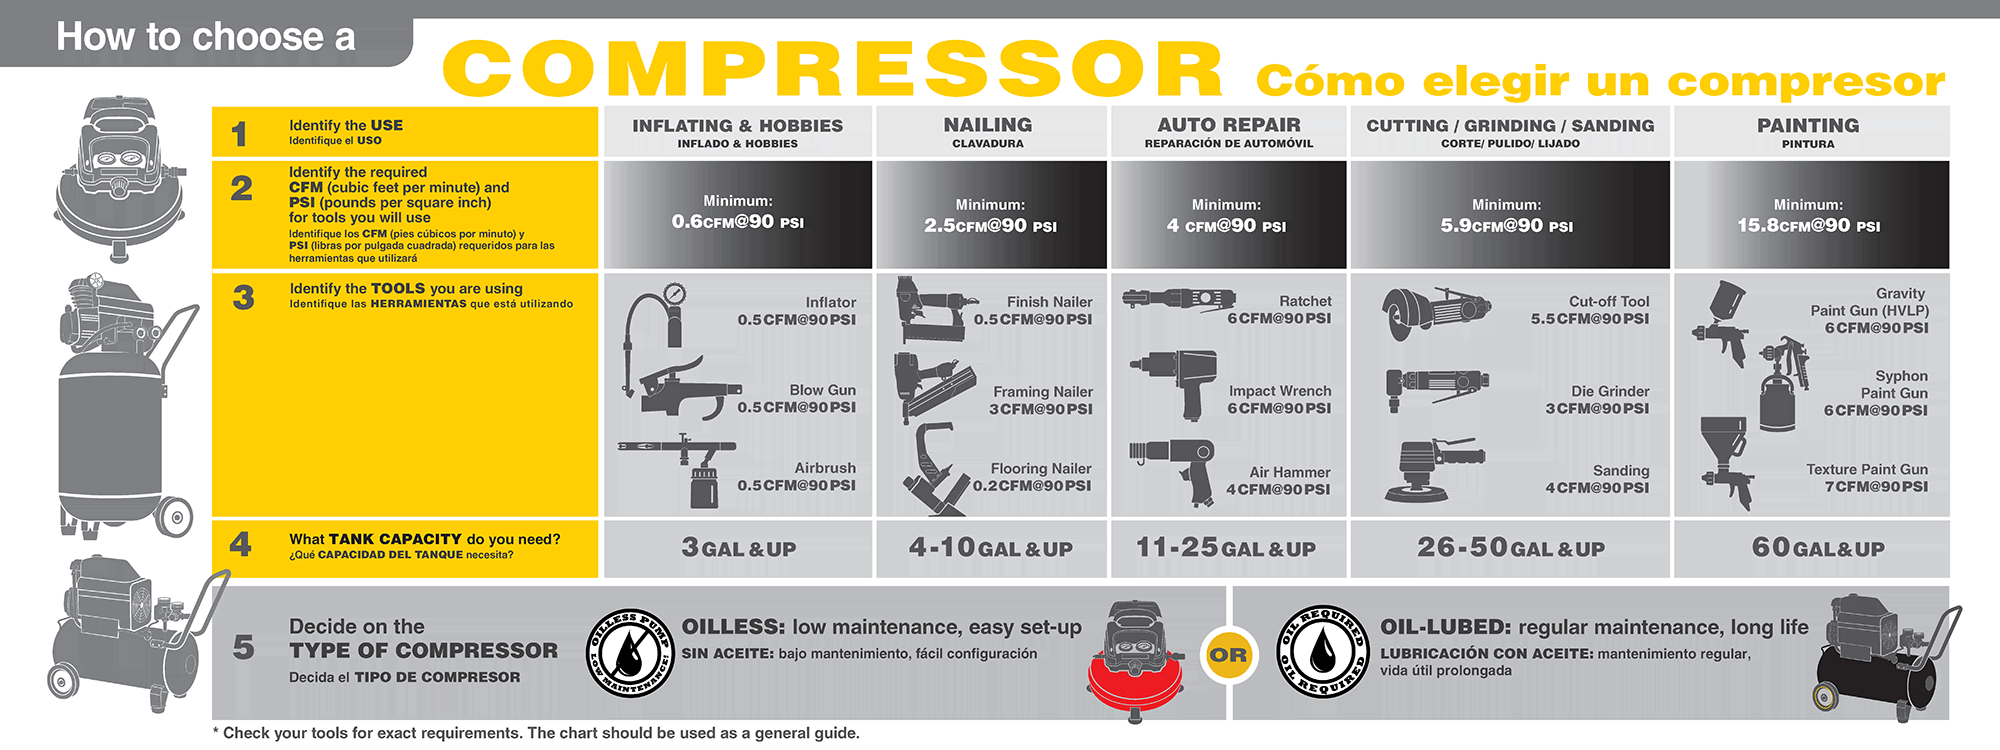 Compressor Guide